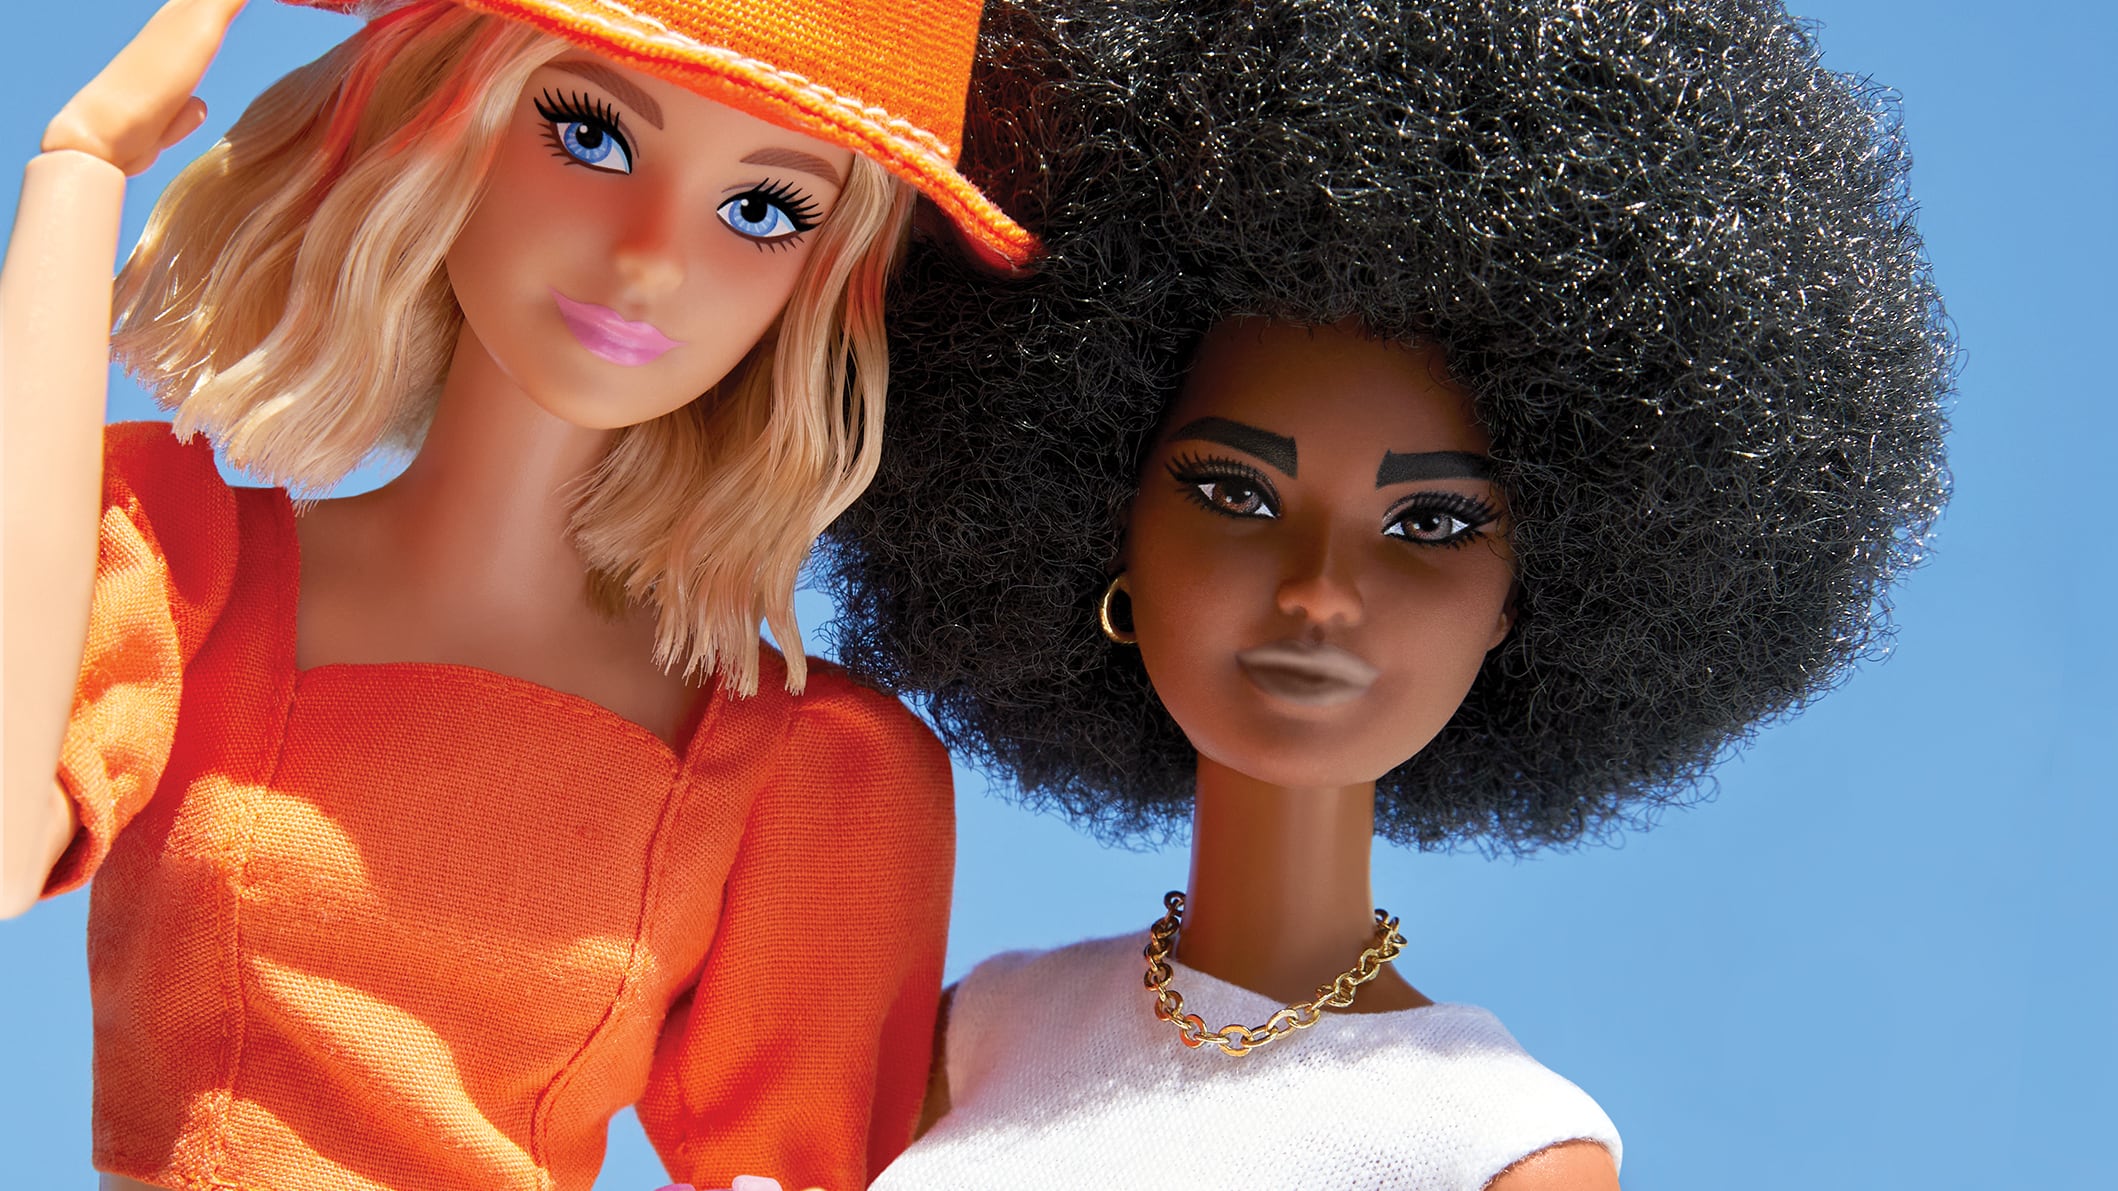 HMD, la compañía detrás de Nokia, anuncia un acuerdo comercial con Mattel para desarrollar un smartphone oficial de Barbie tras el éxito de la película.